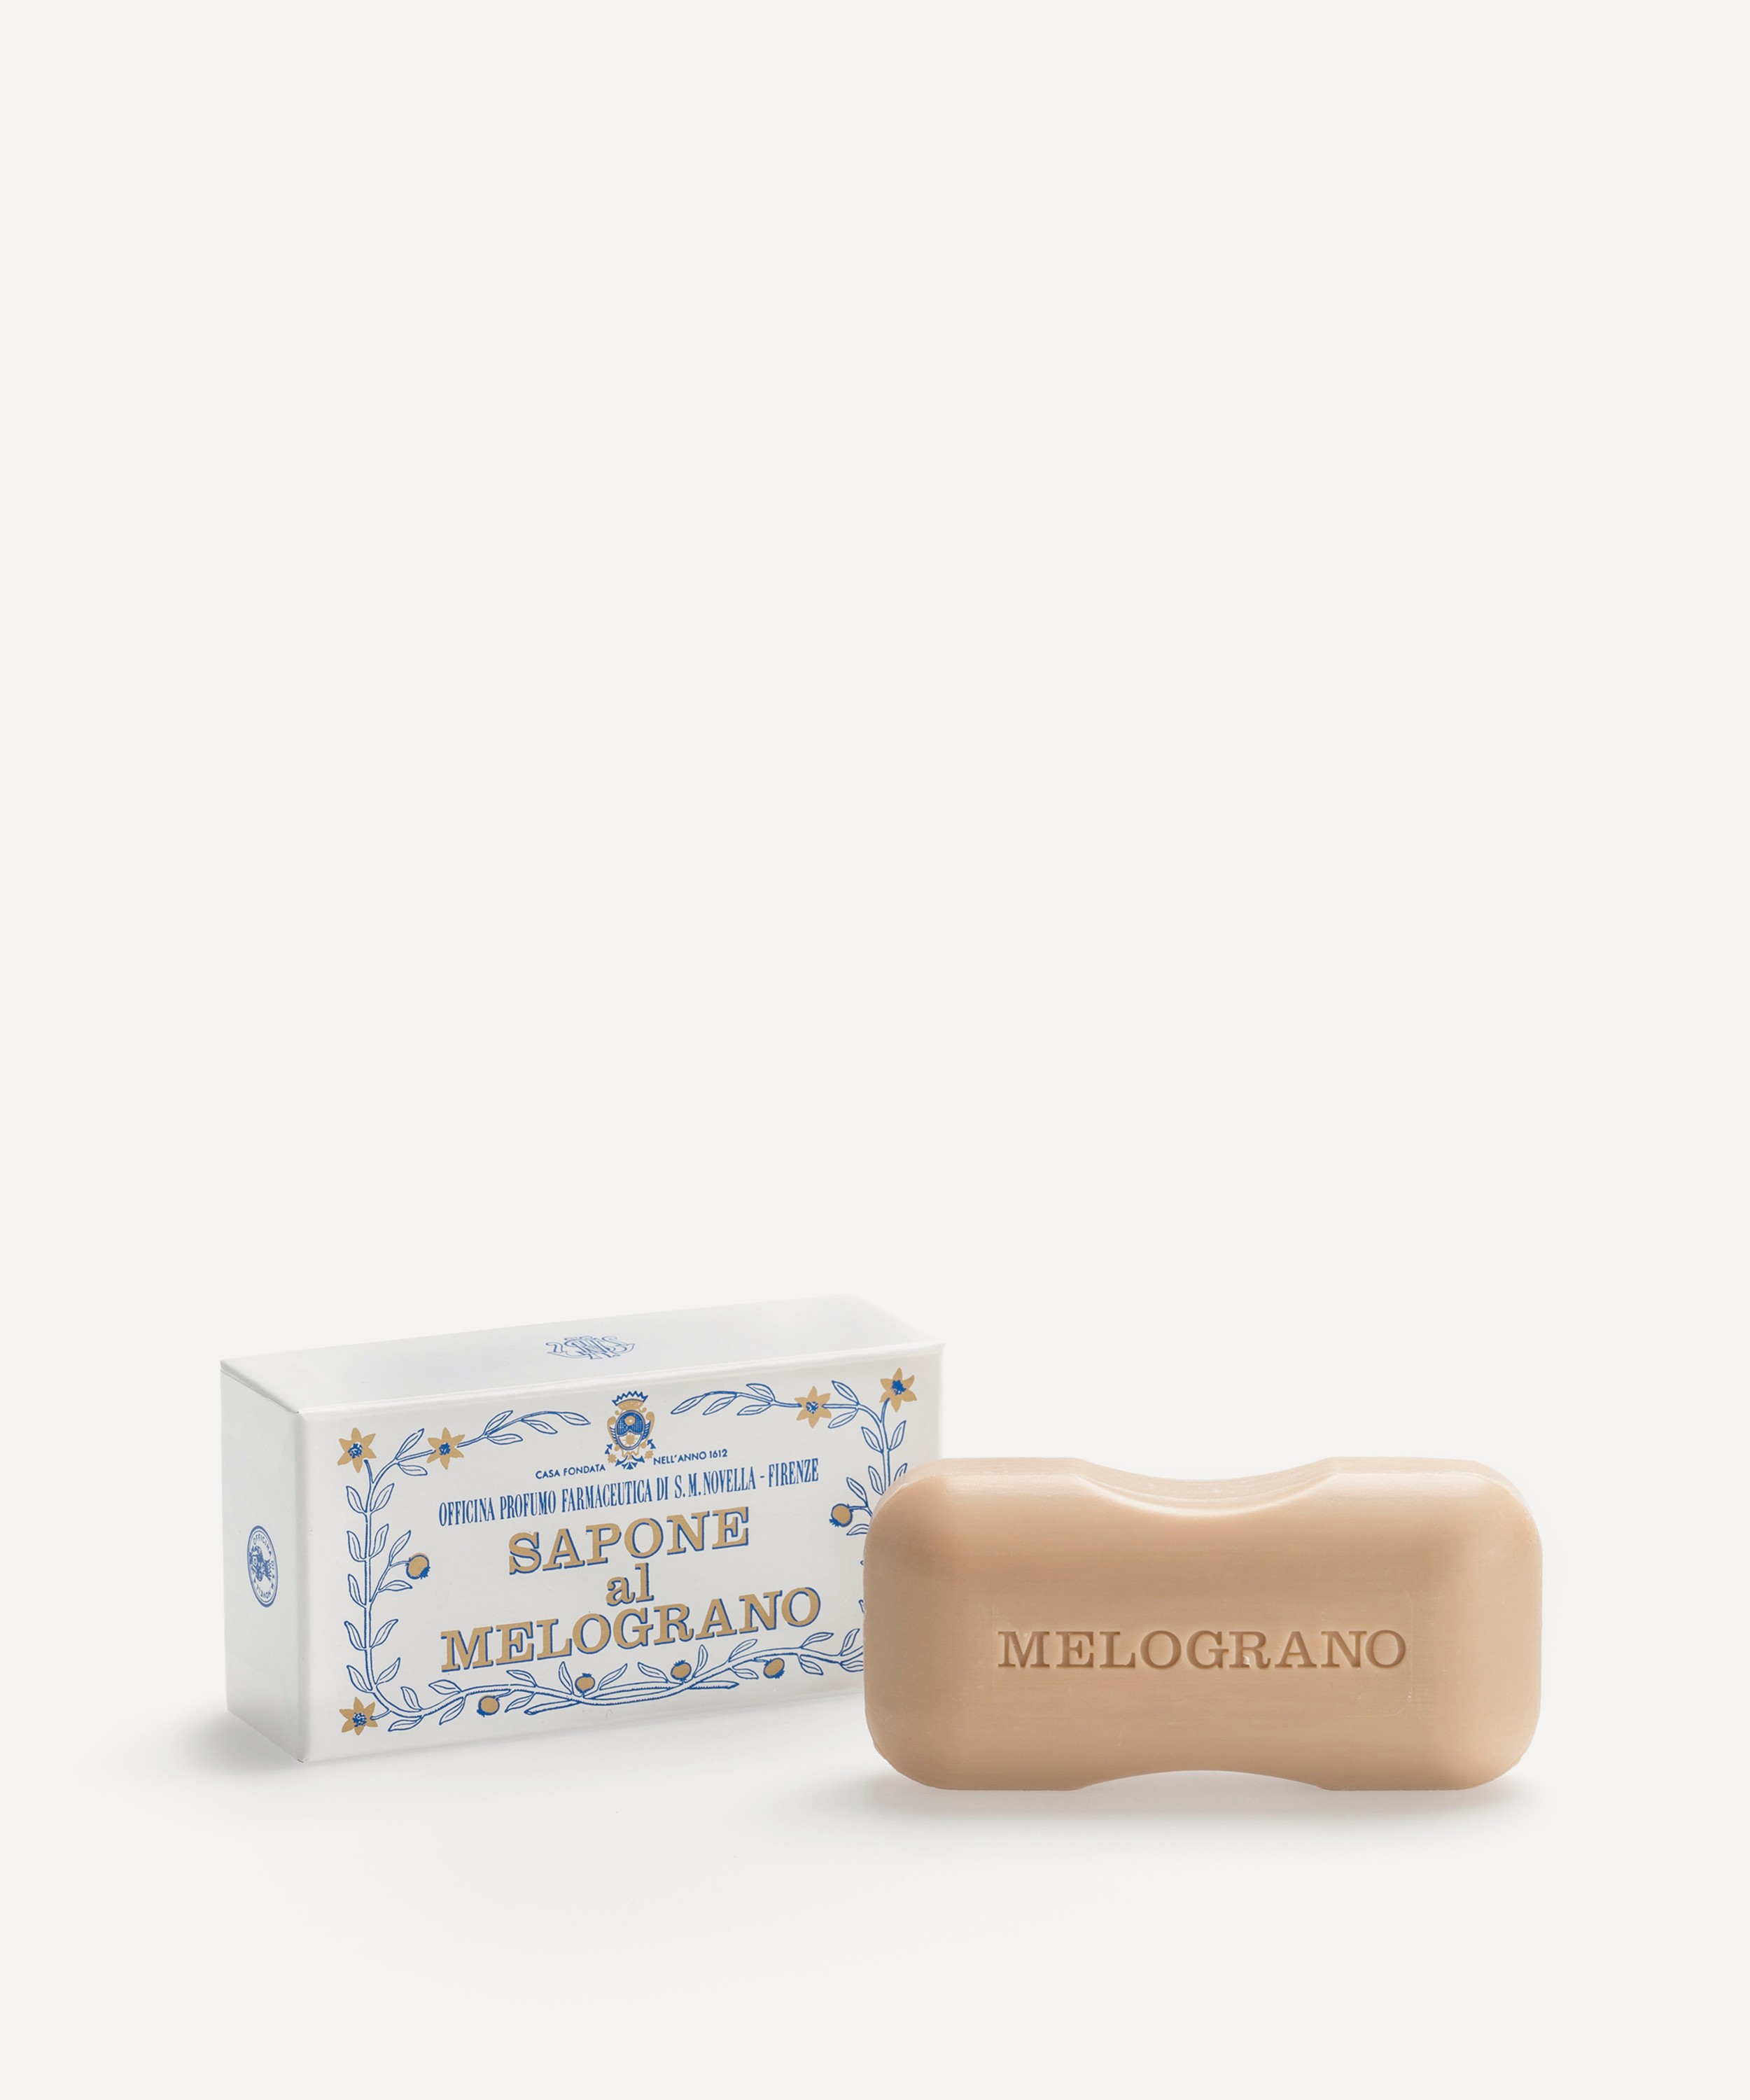 Officina Profumo-Farmaceutica di Santa Maria Novella - Melograno Solid Hand Soap 100g image number 0